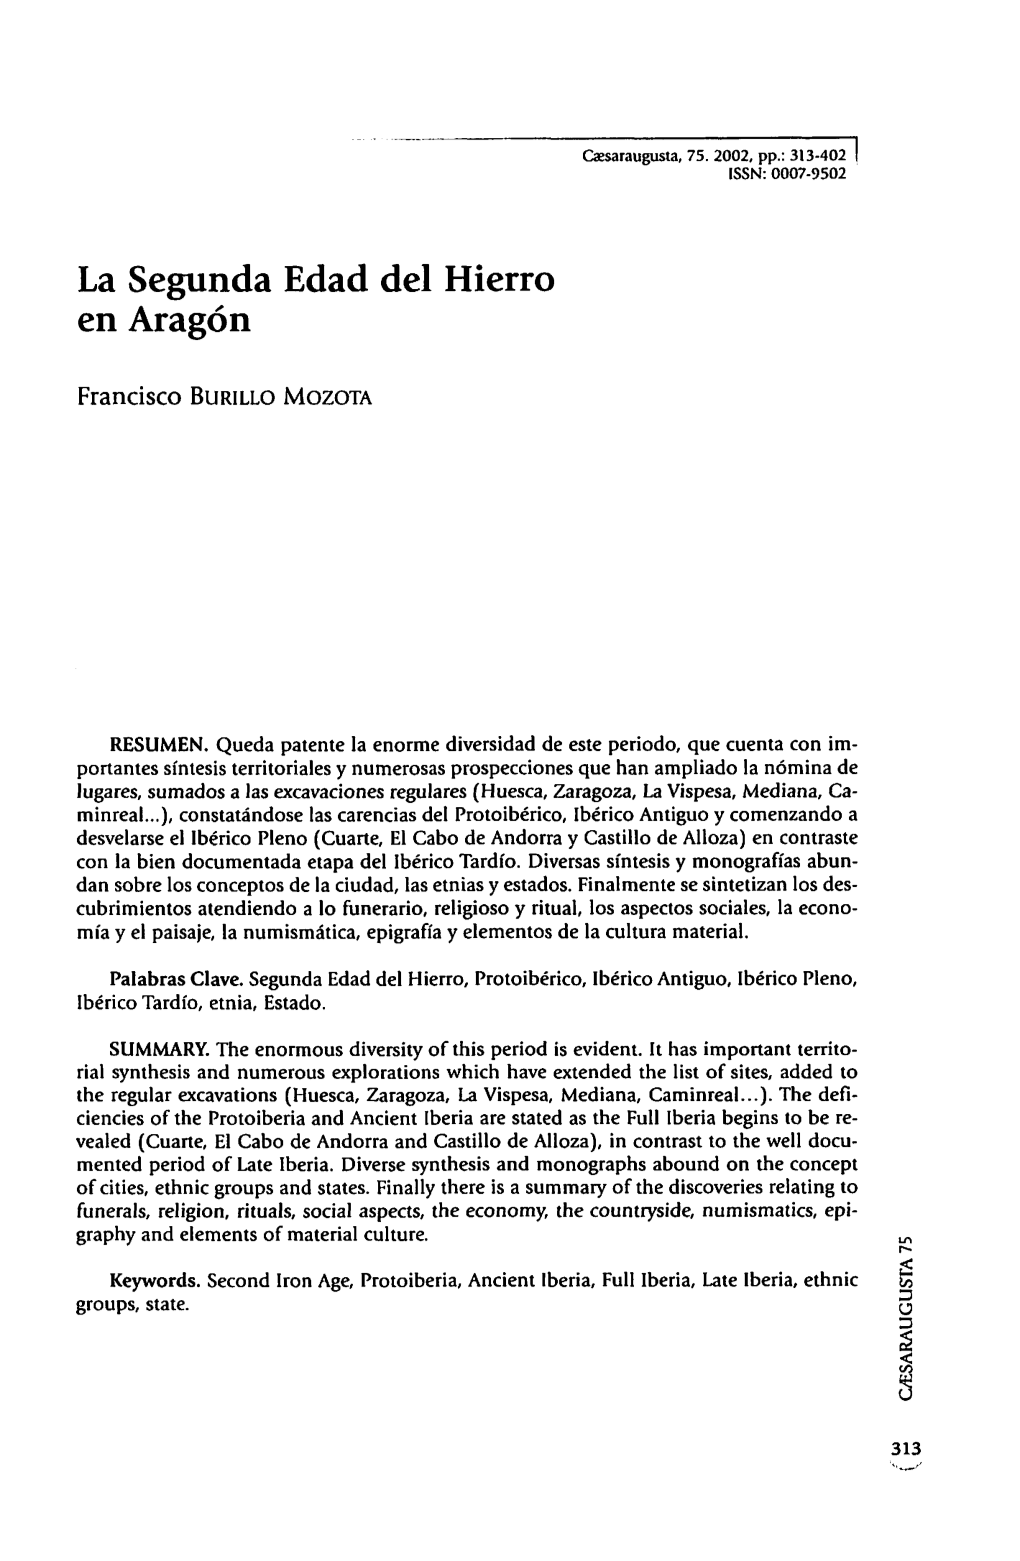 11. La Segunda Edad Del Hierro En Aragón, Por Francisco Burillo Mozota